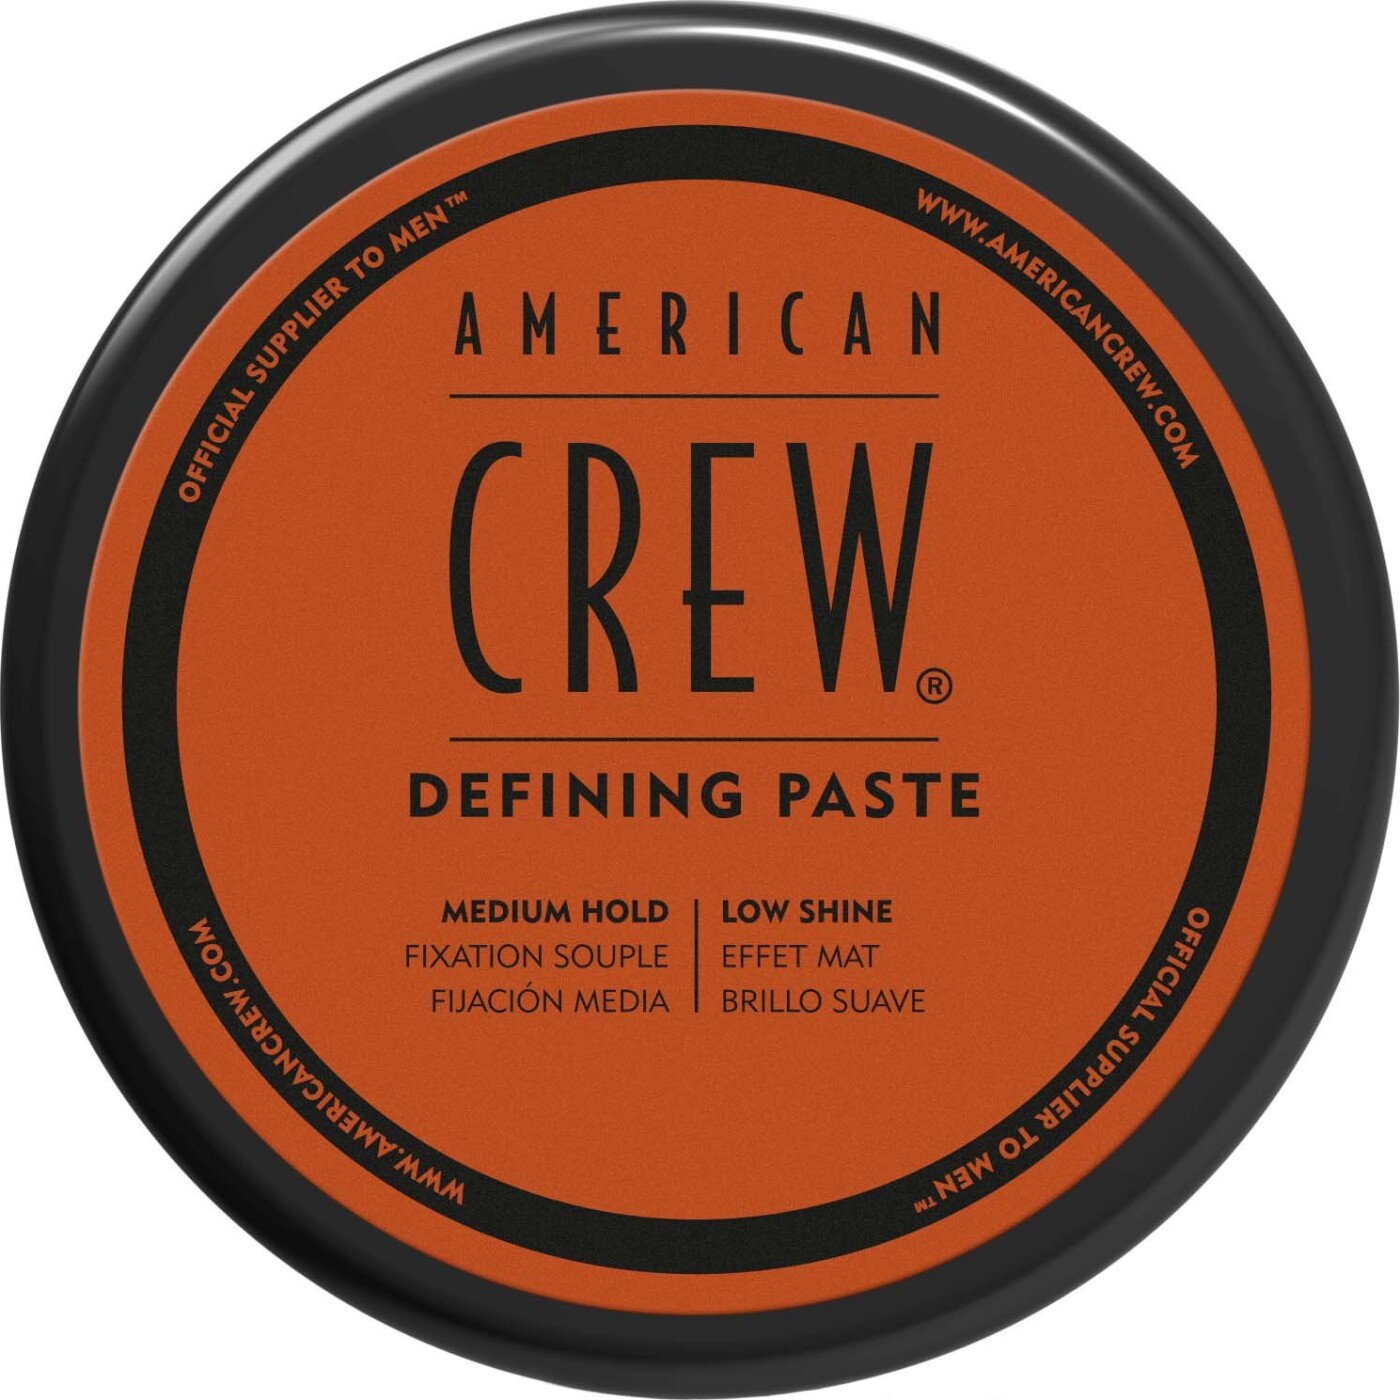 Billede af American Crew - Defining Paste - 85 G hos Gucca.dk